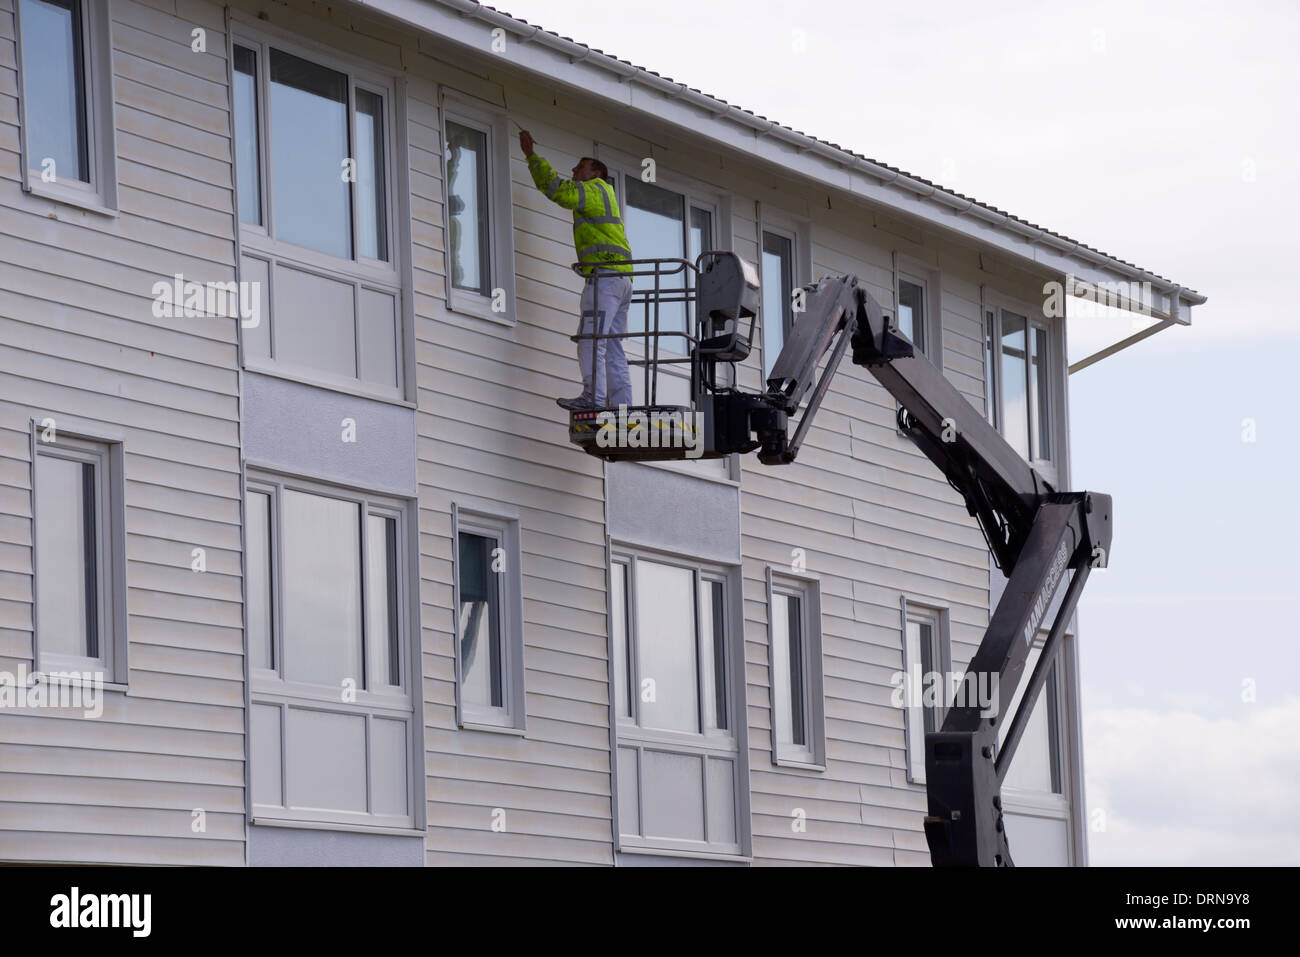 L'uomo pittura in alto su un edificio residenziale, lavorando da un cherry picker, idraulico piattaforma sollevata. Wales, Regno Unito Foto Stock